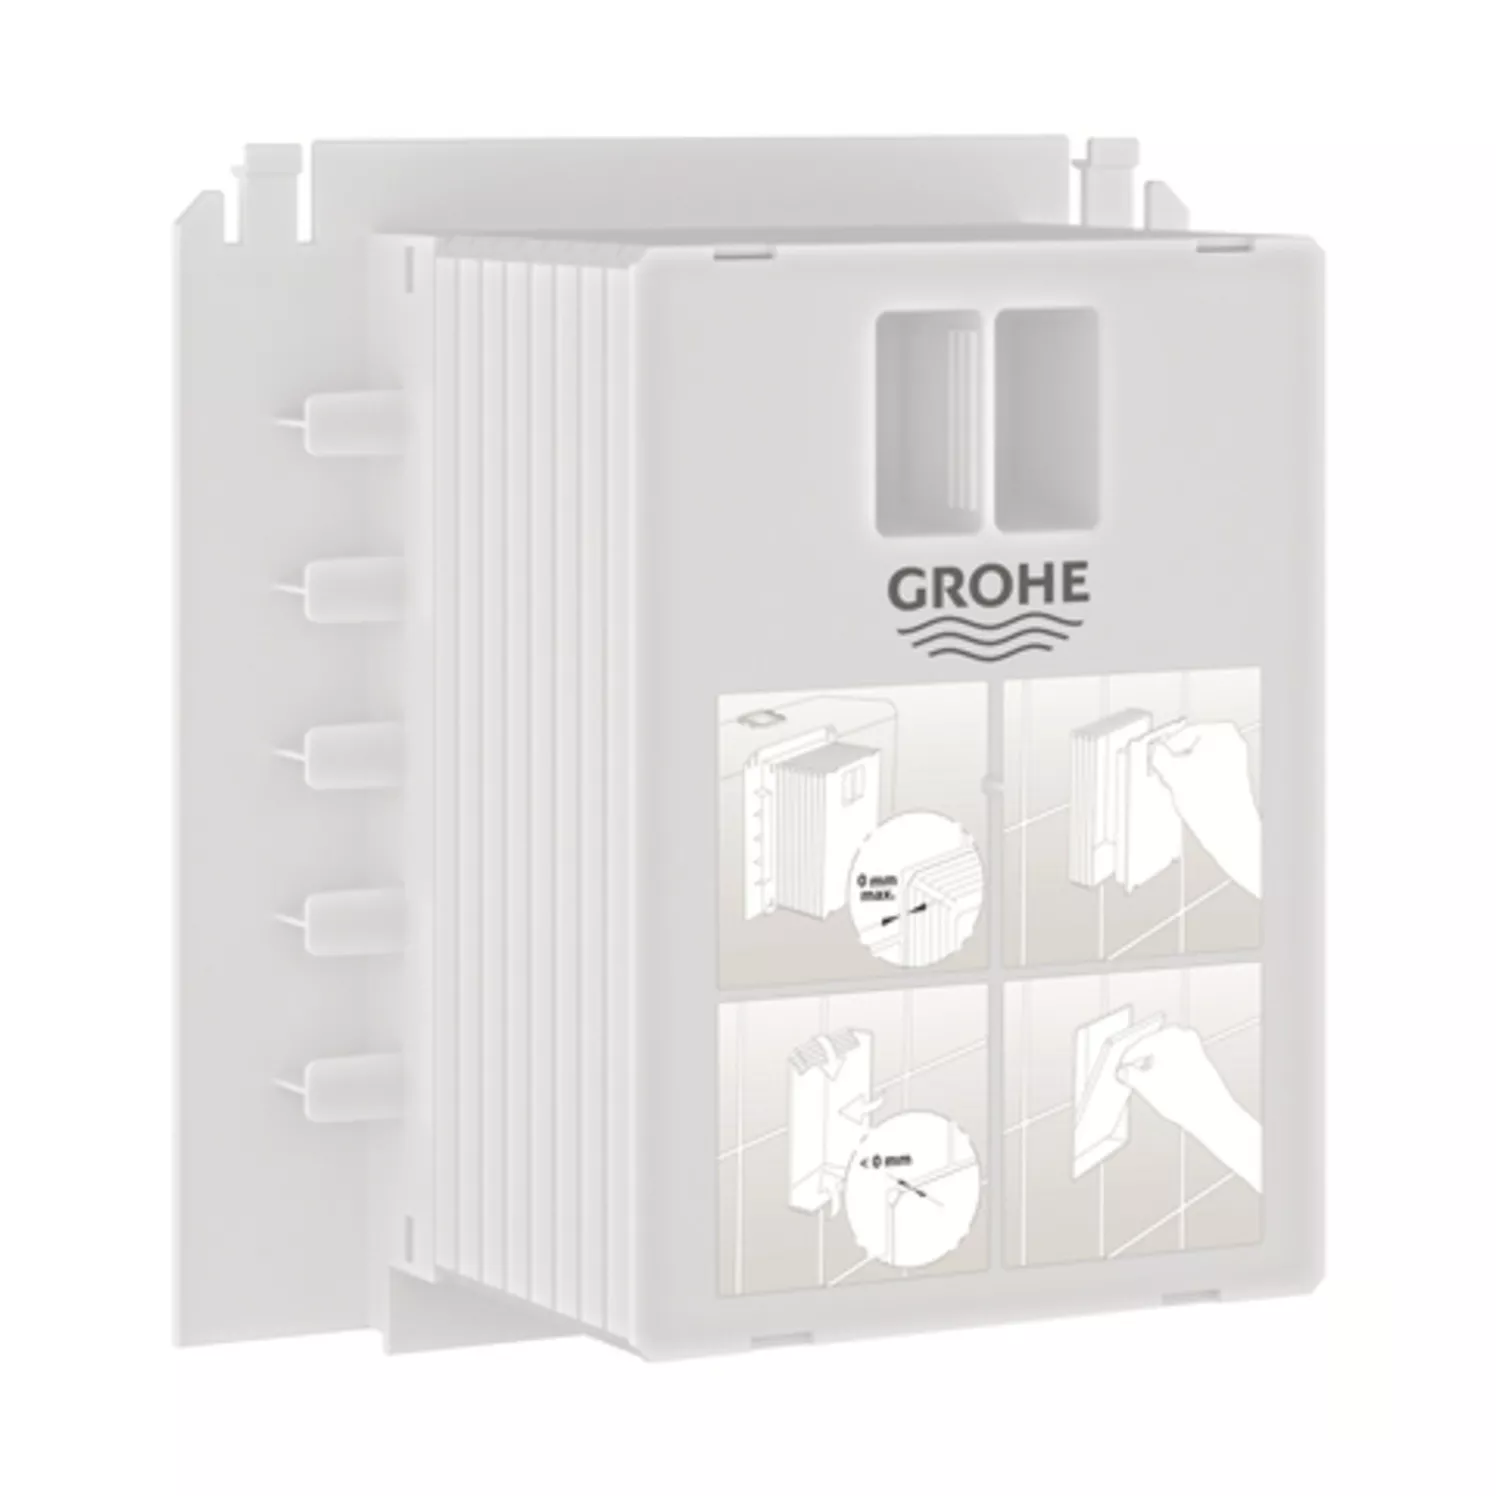 GROHE Revisionsschacht 40911, für kleine WC-Betätigungen, zur Kombination mit Rapid SL und Uniset GD 2 Spülkasten